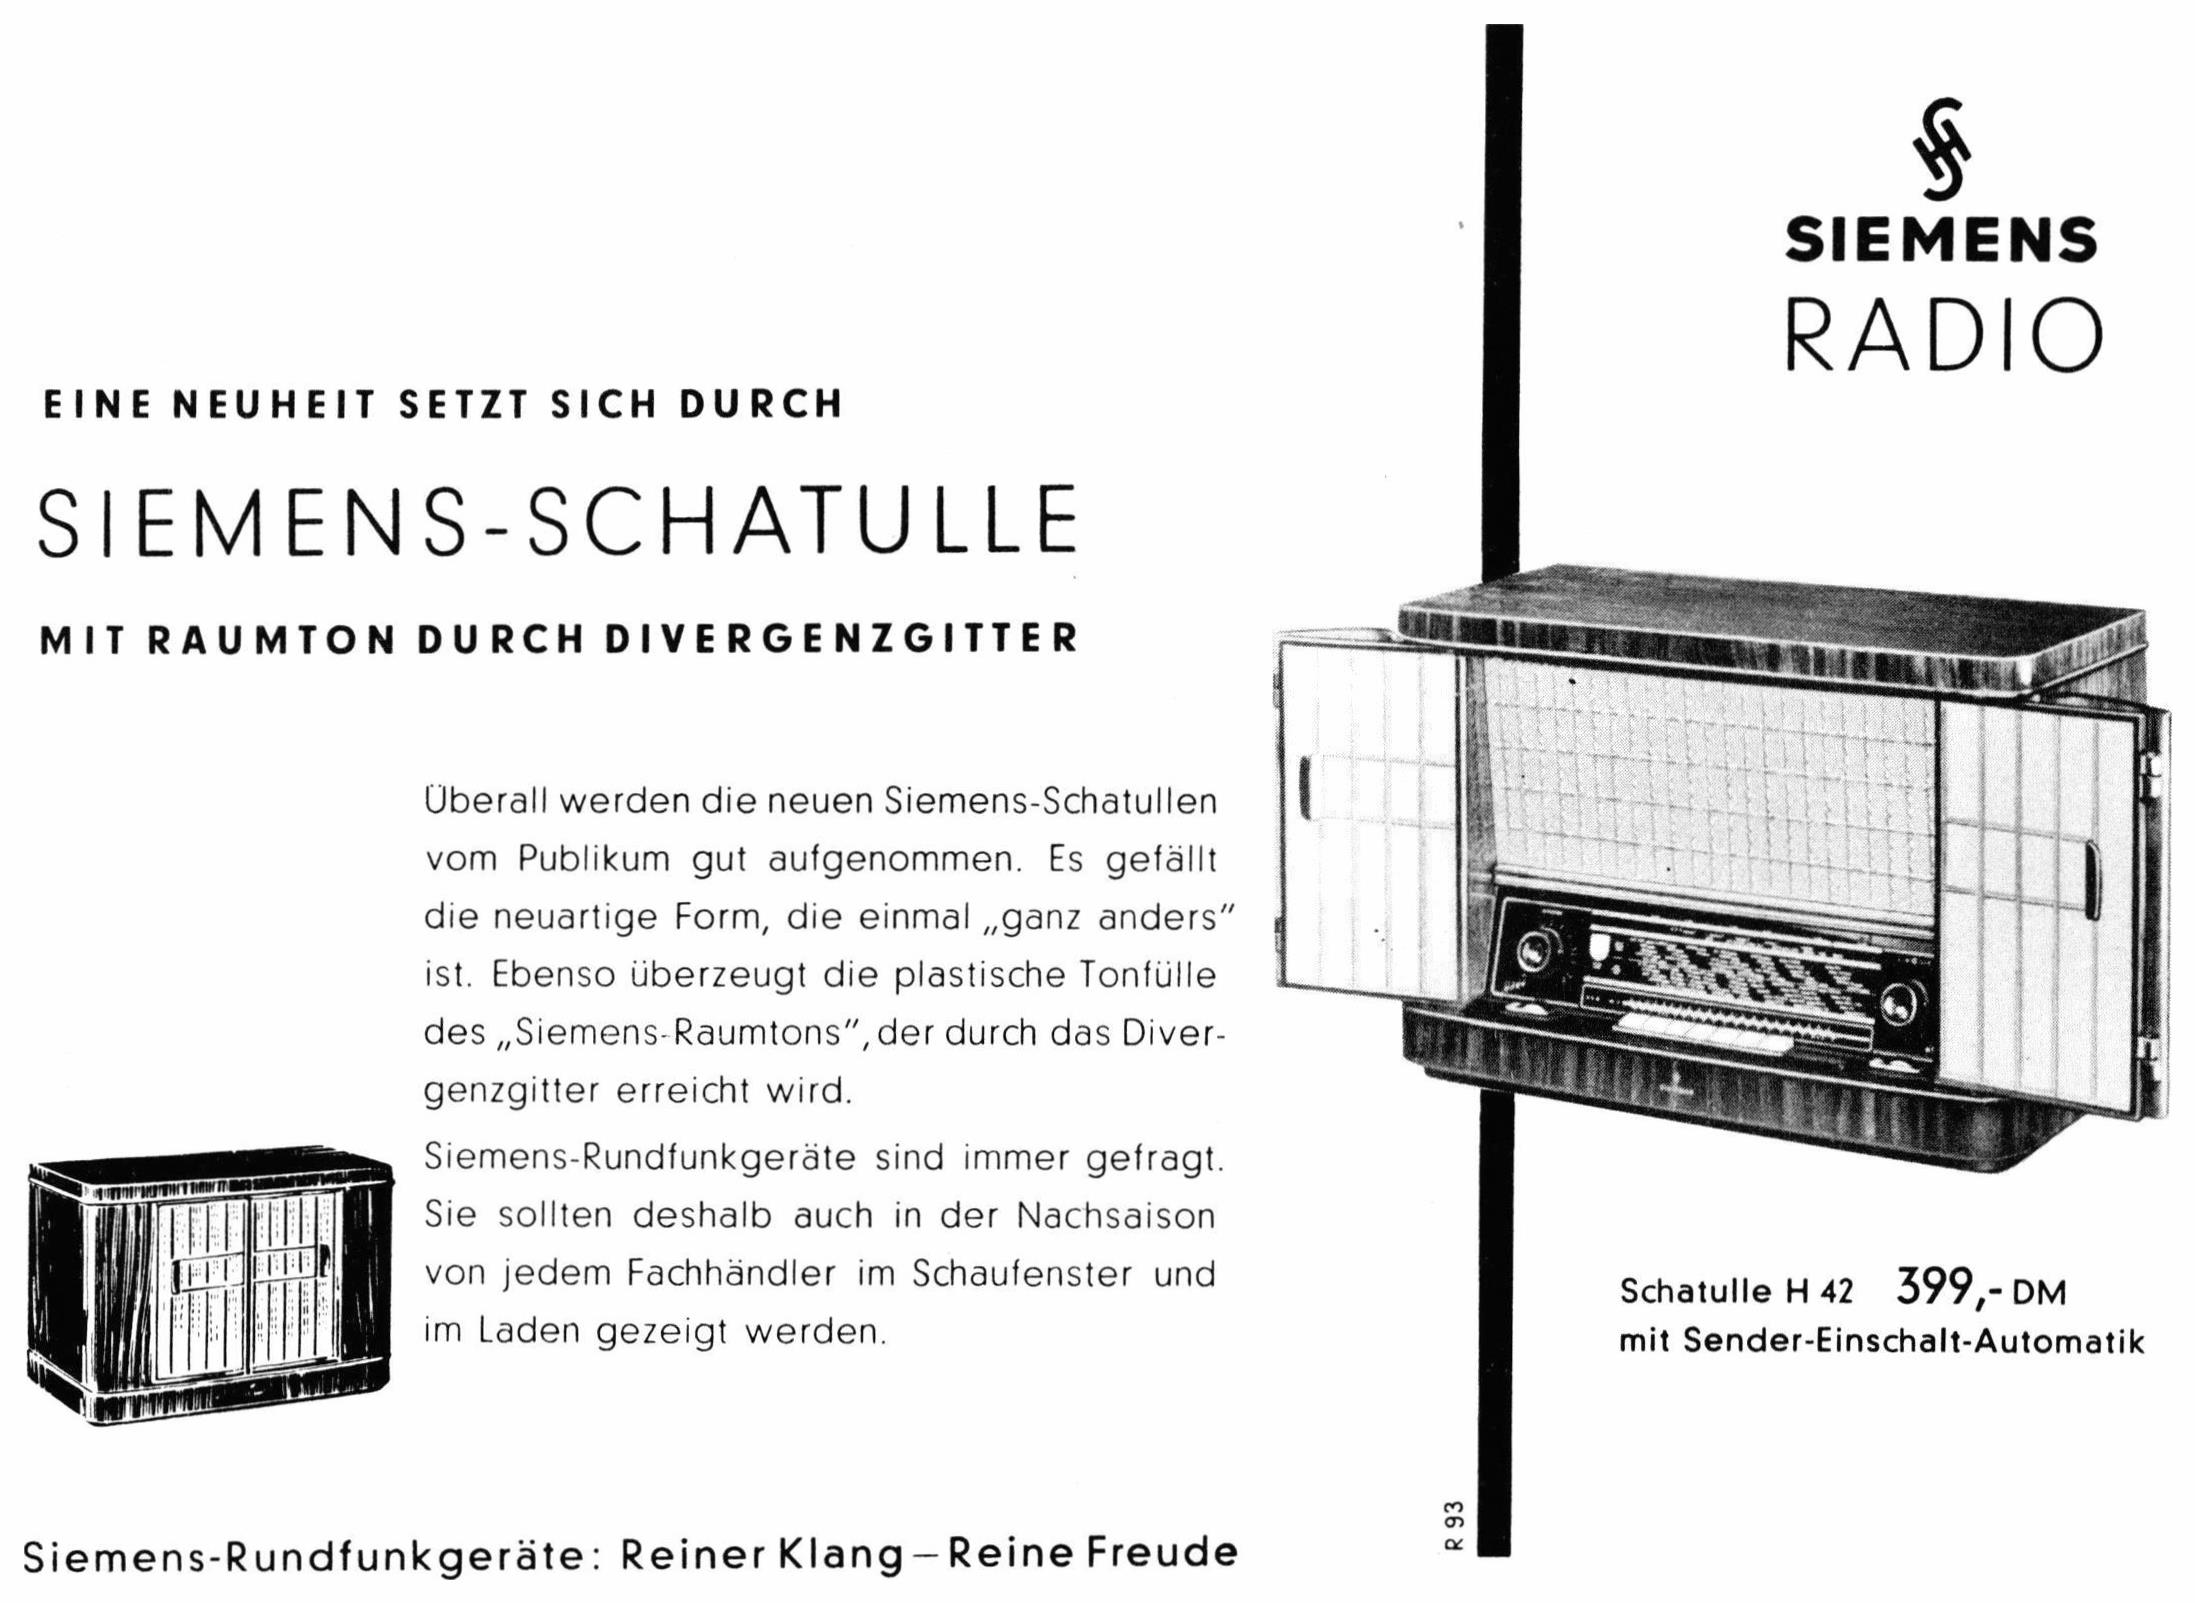 Siemens 1955 031.jpg